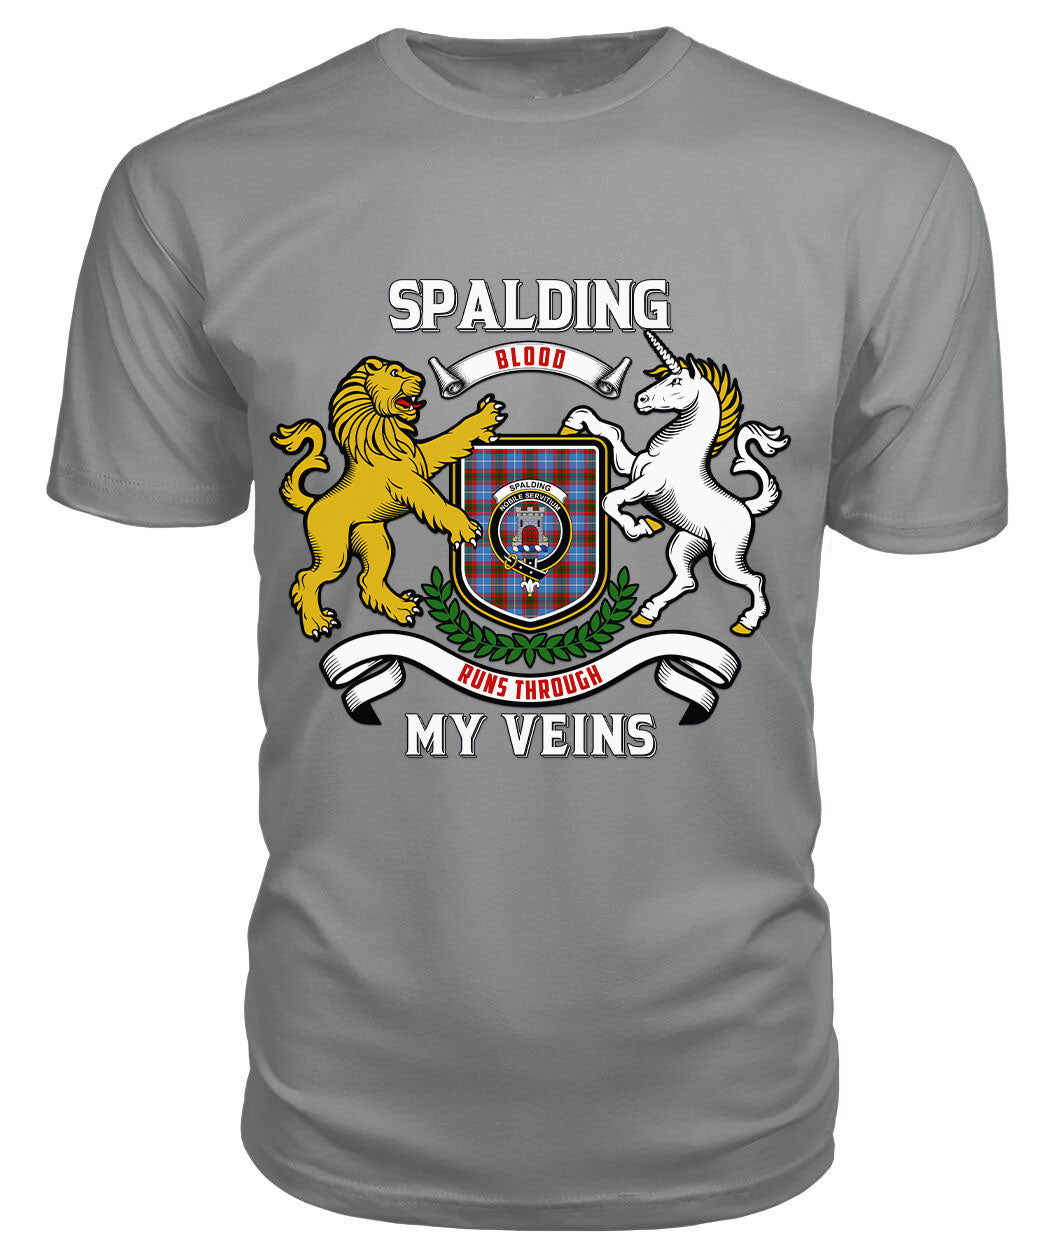 Spalding Tartan Crest 2D T-shirt - Blood Runs Through My Veins Style